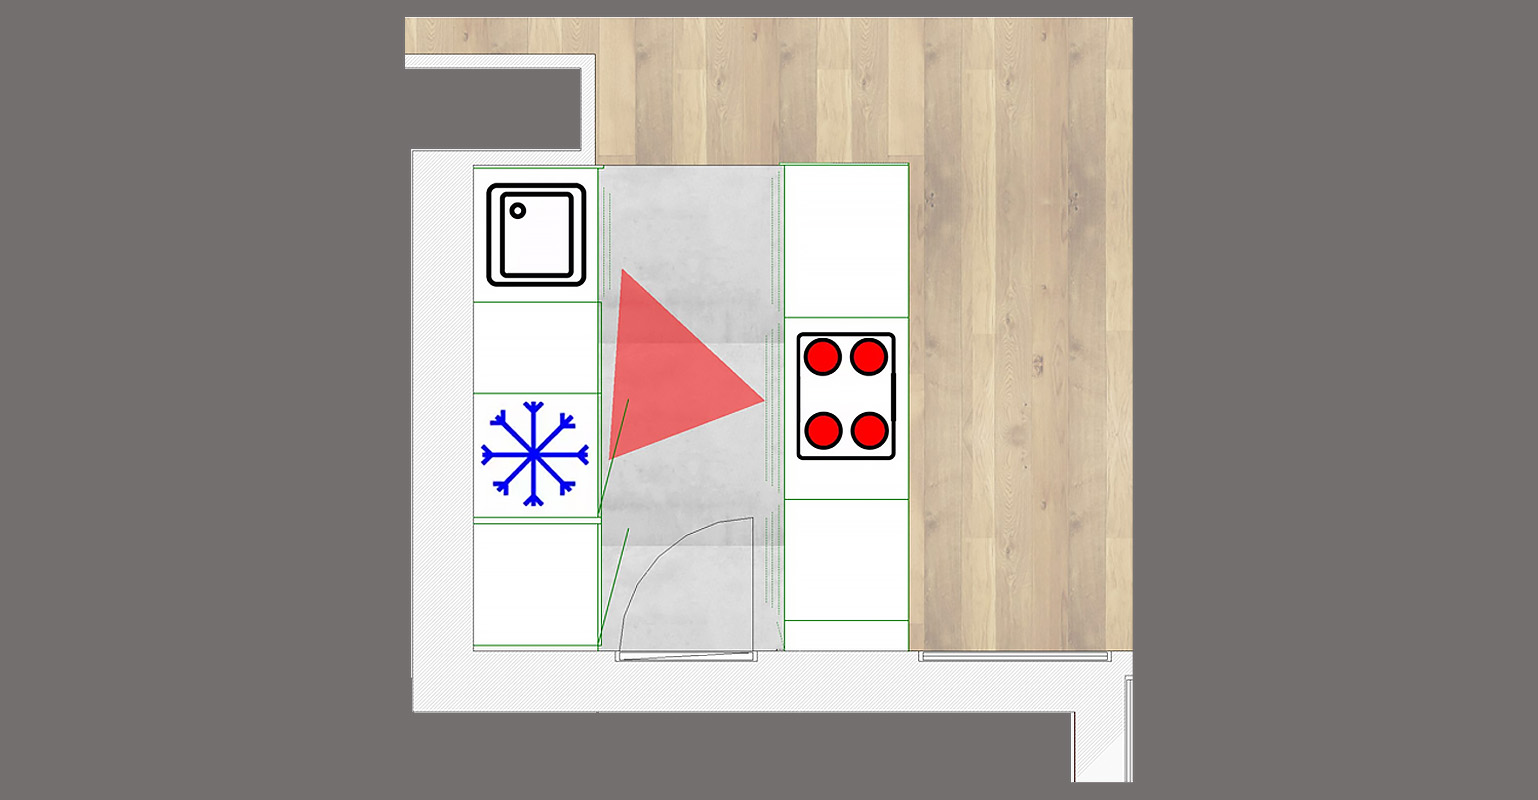 Plan d'architecte d'un triangle d'or en cuisine disposé en i double avec zone de cuisson, zone froid et zone lavage